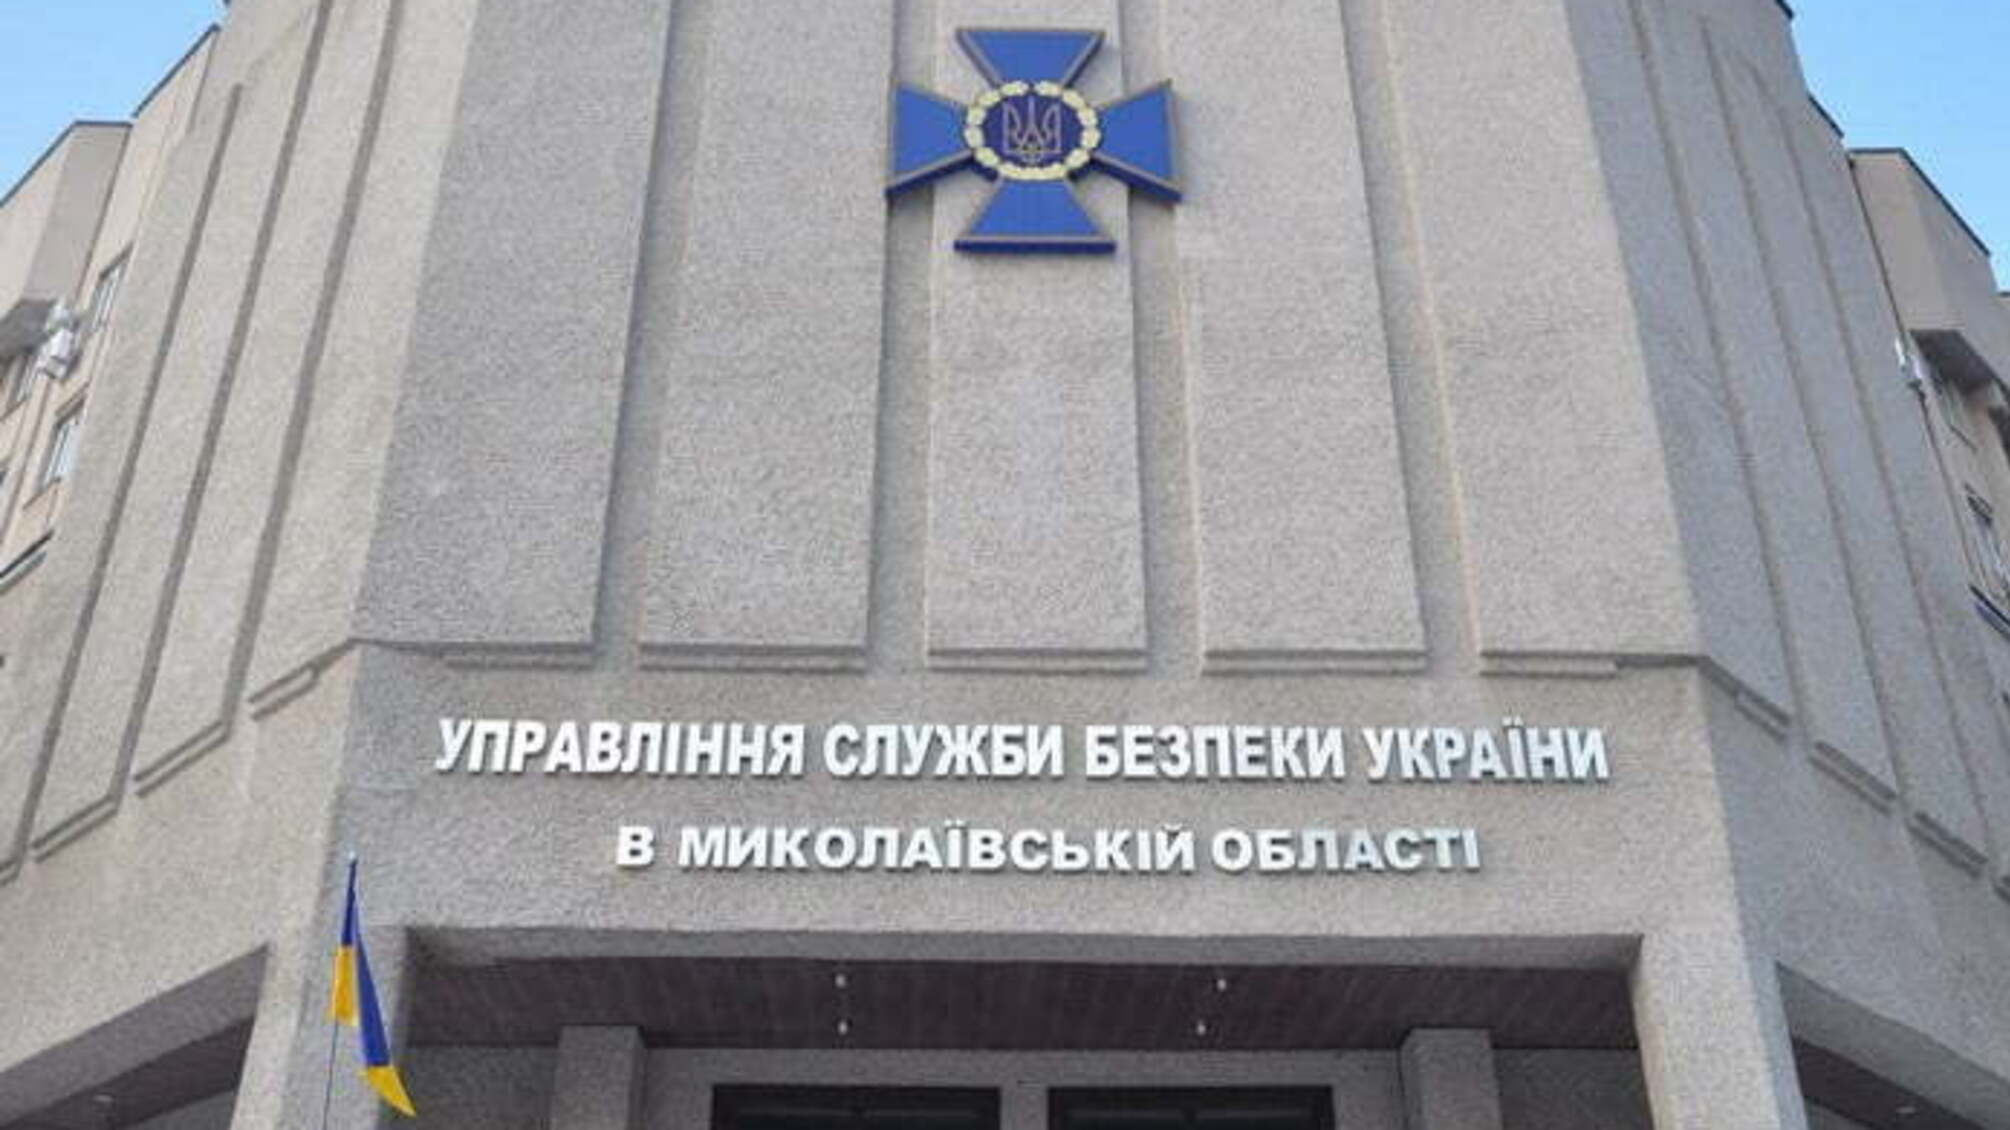 На Миколаївщині чиновники розікрали 2,5 млн грн з обласного бюджету